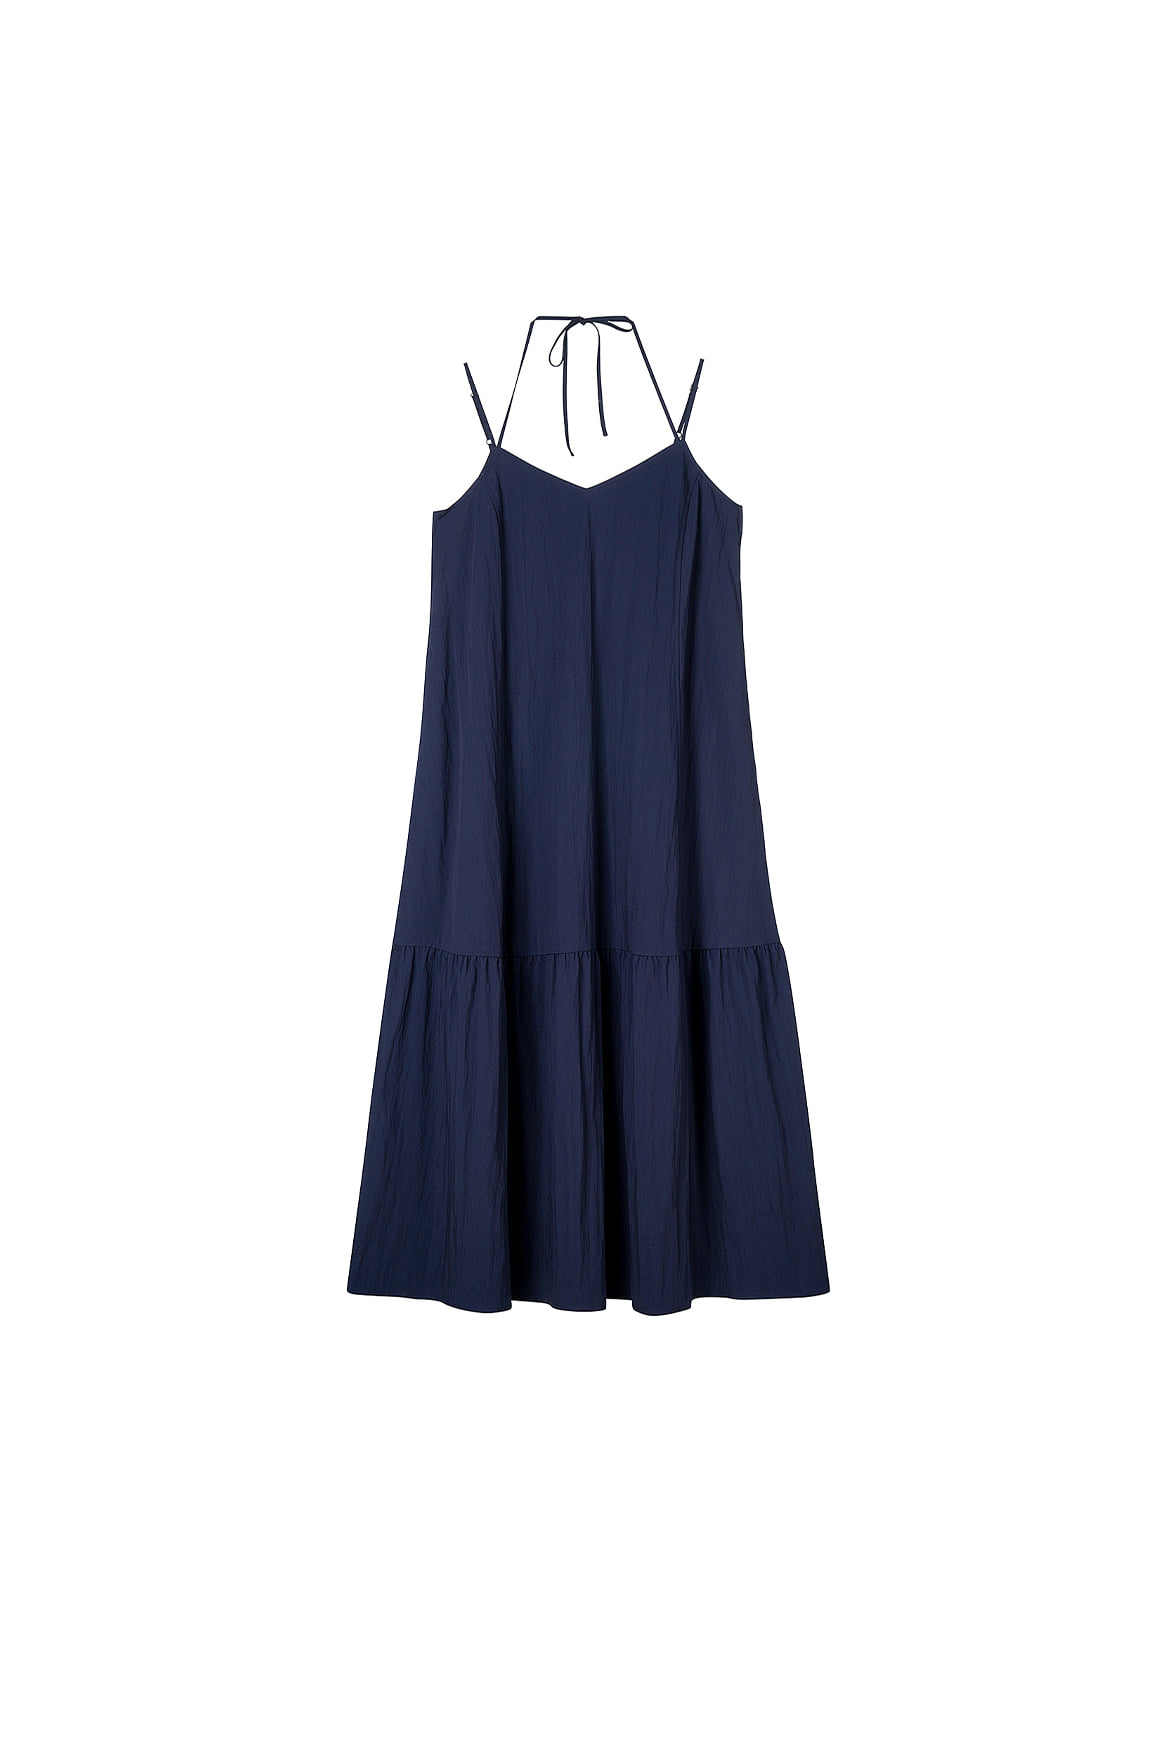 [샘플] Double String Summer Dress_Navy